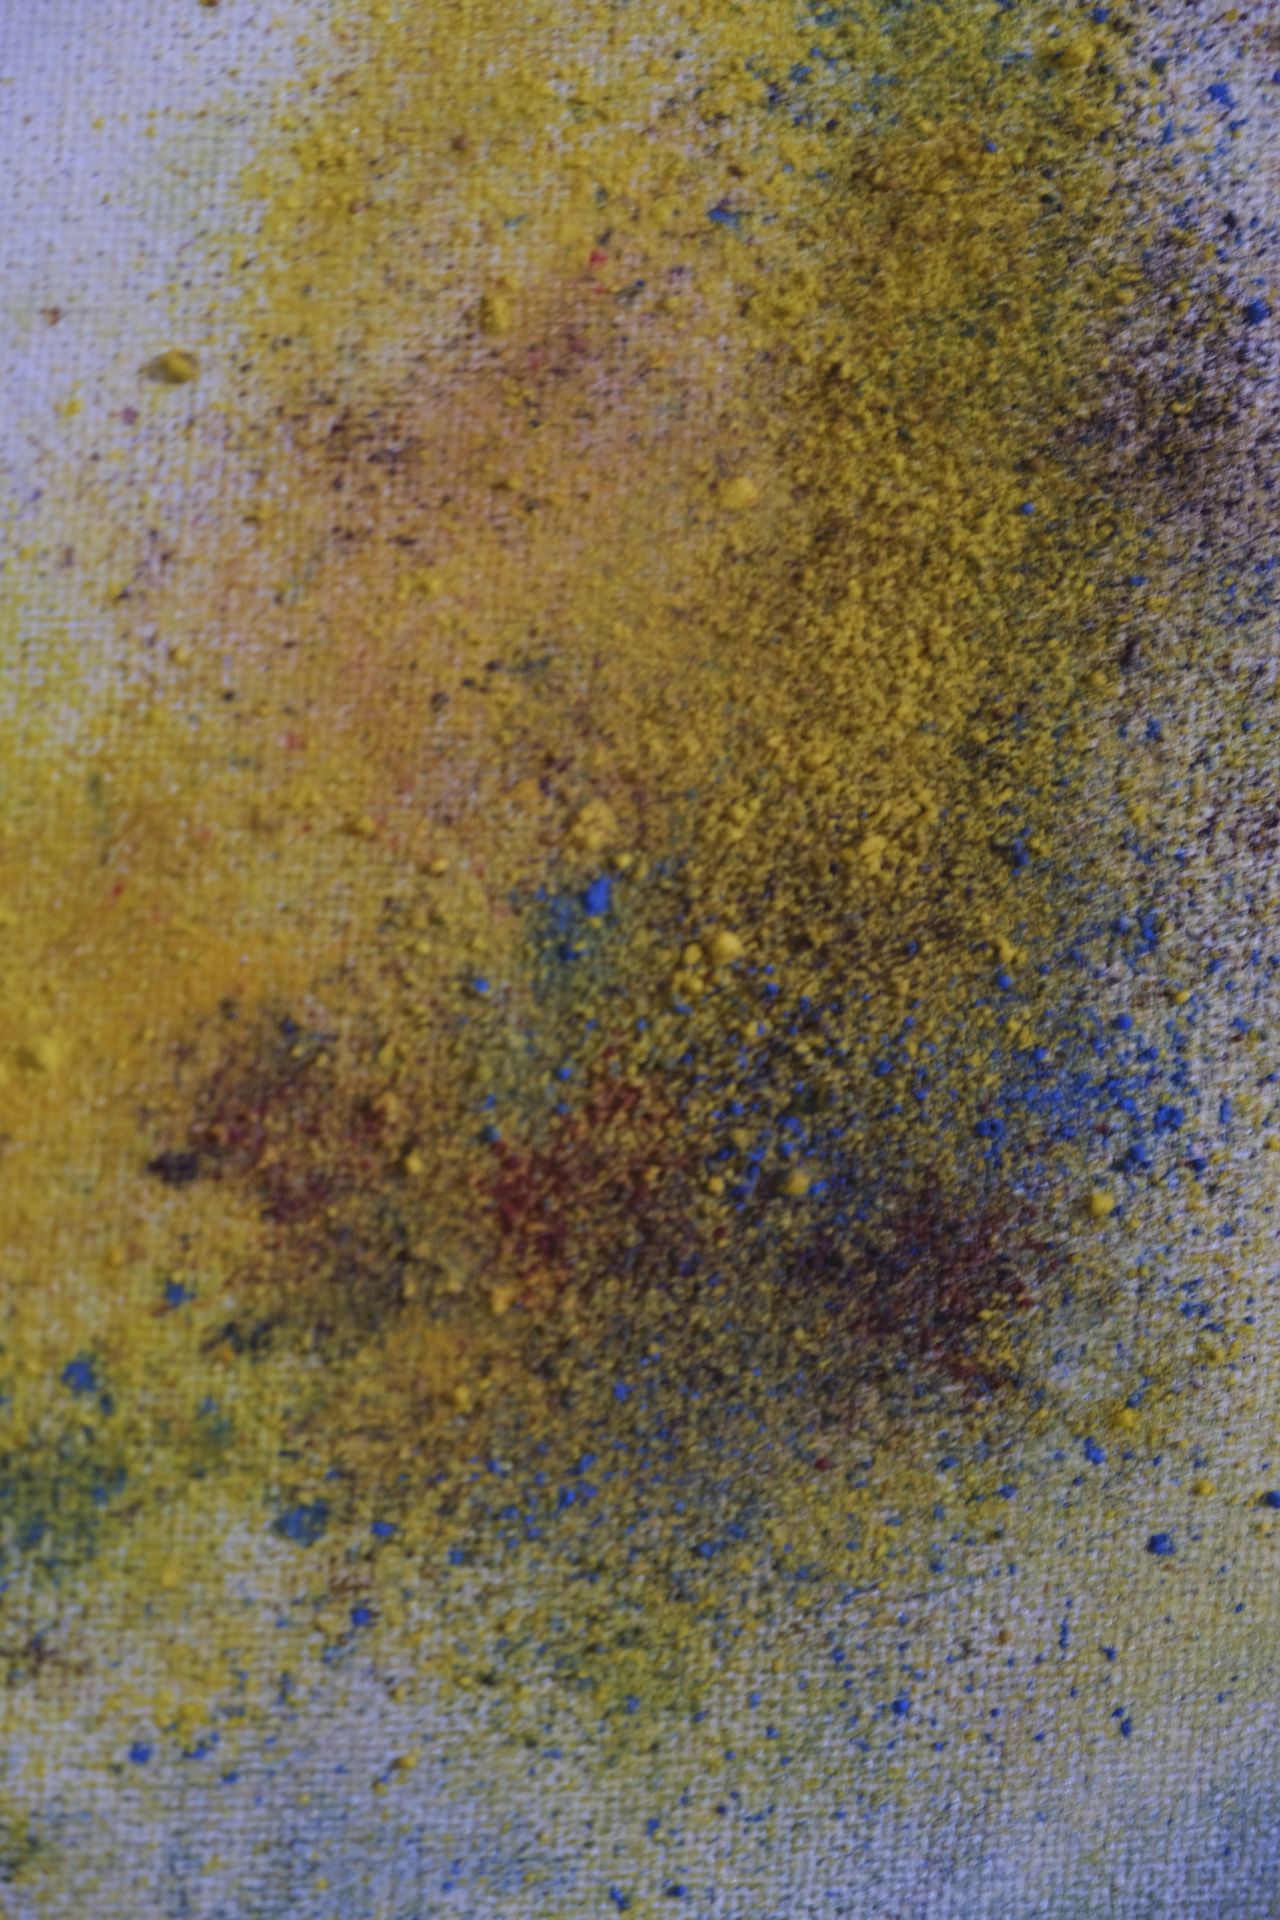 Sans titre - Technique mixte (acrylique, pigments) - 60 x 60 x 7,5 - 2019